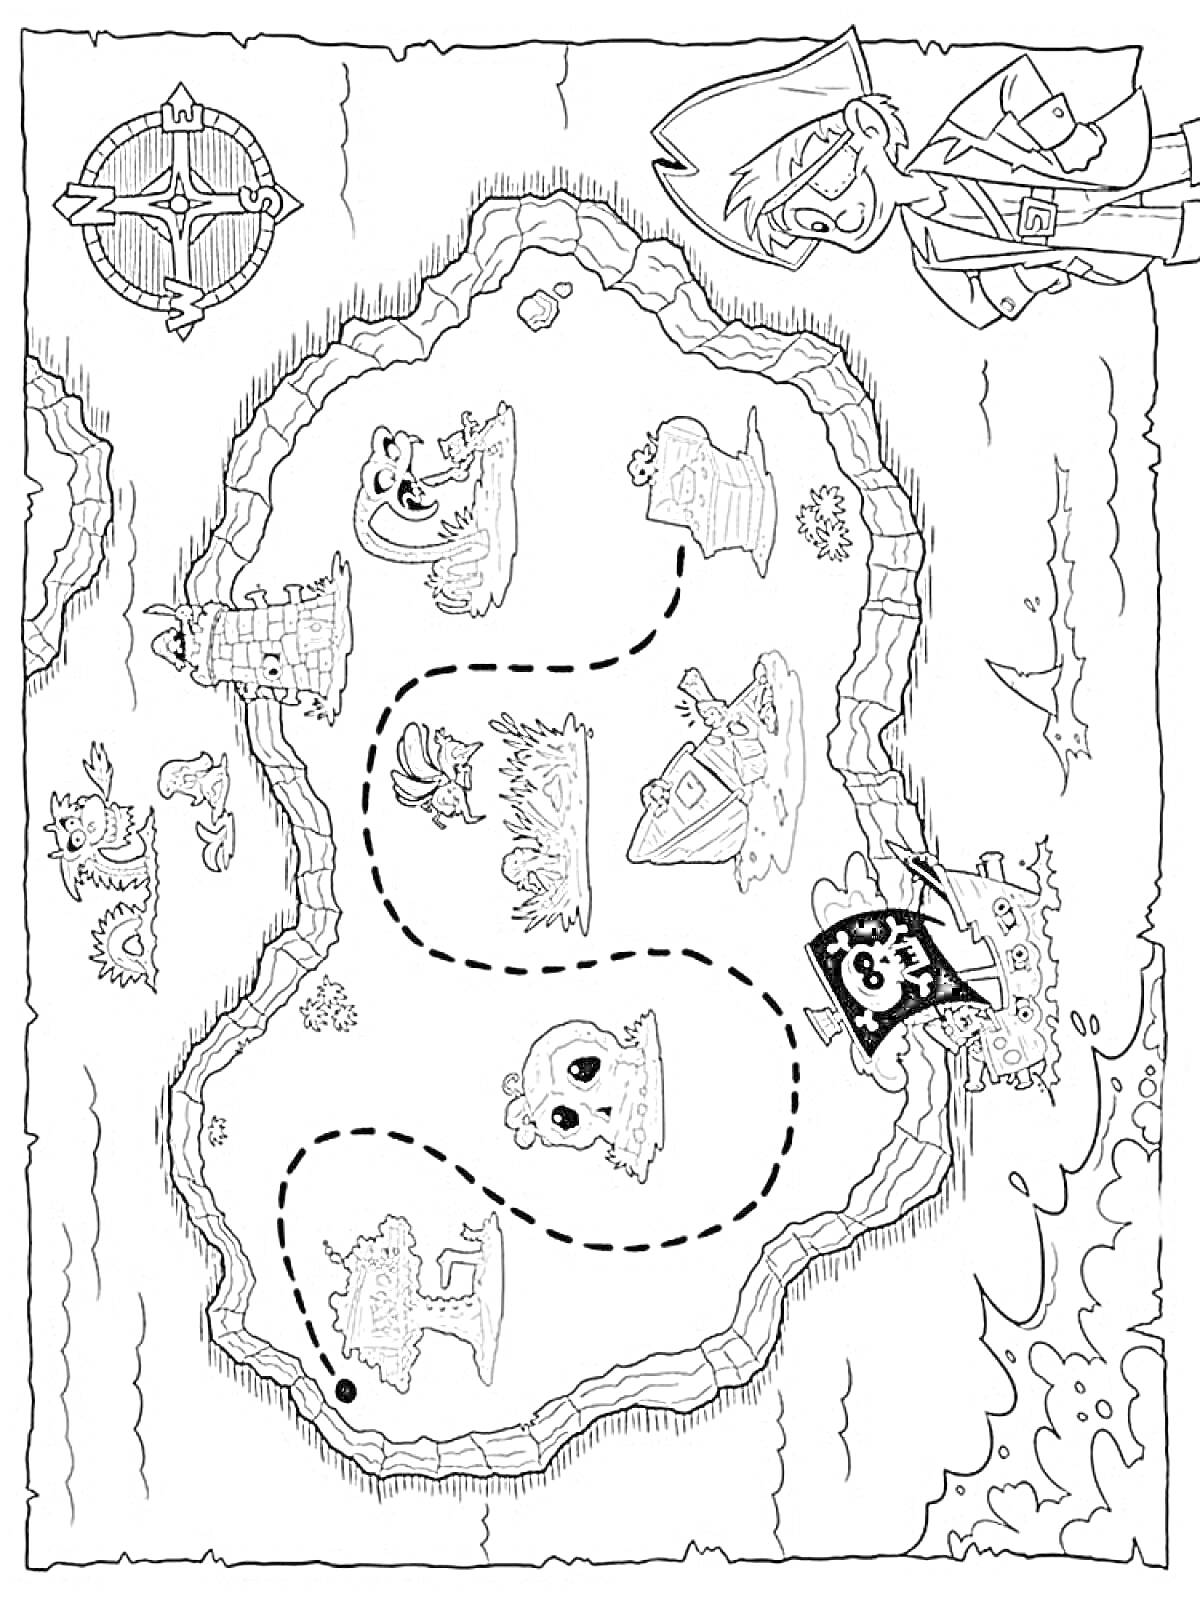 Карта сокровищ с пиратами, сундуками, черепами, животными и разными ориентирами